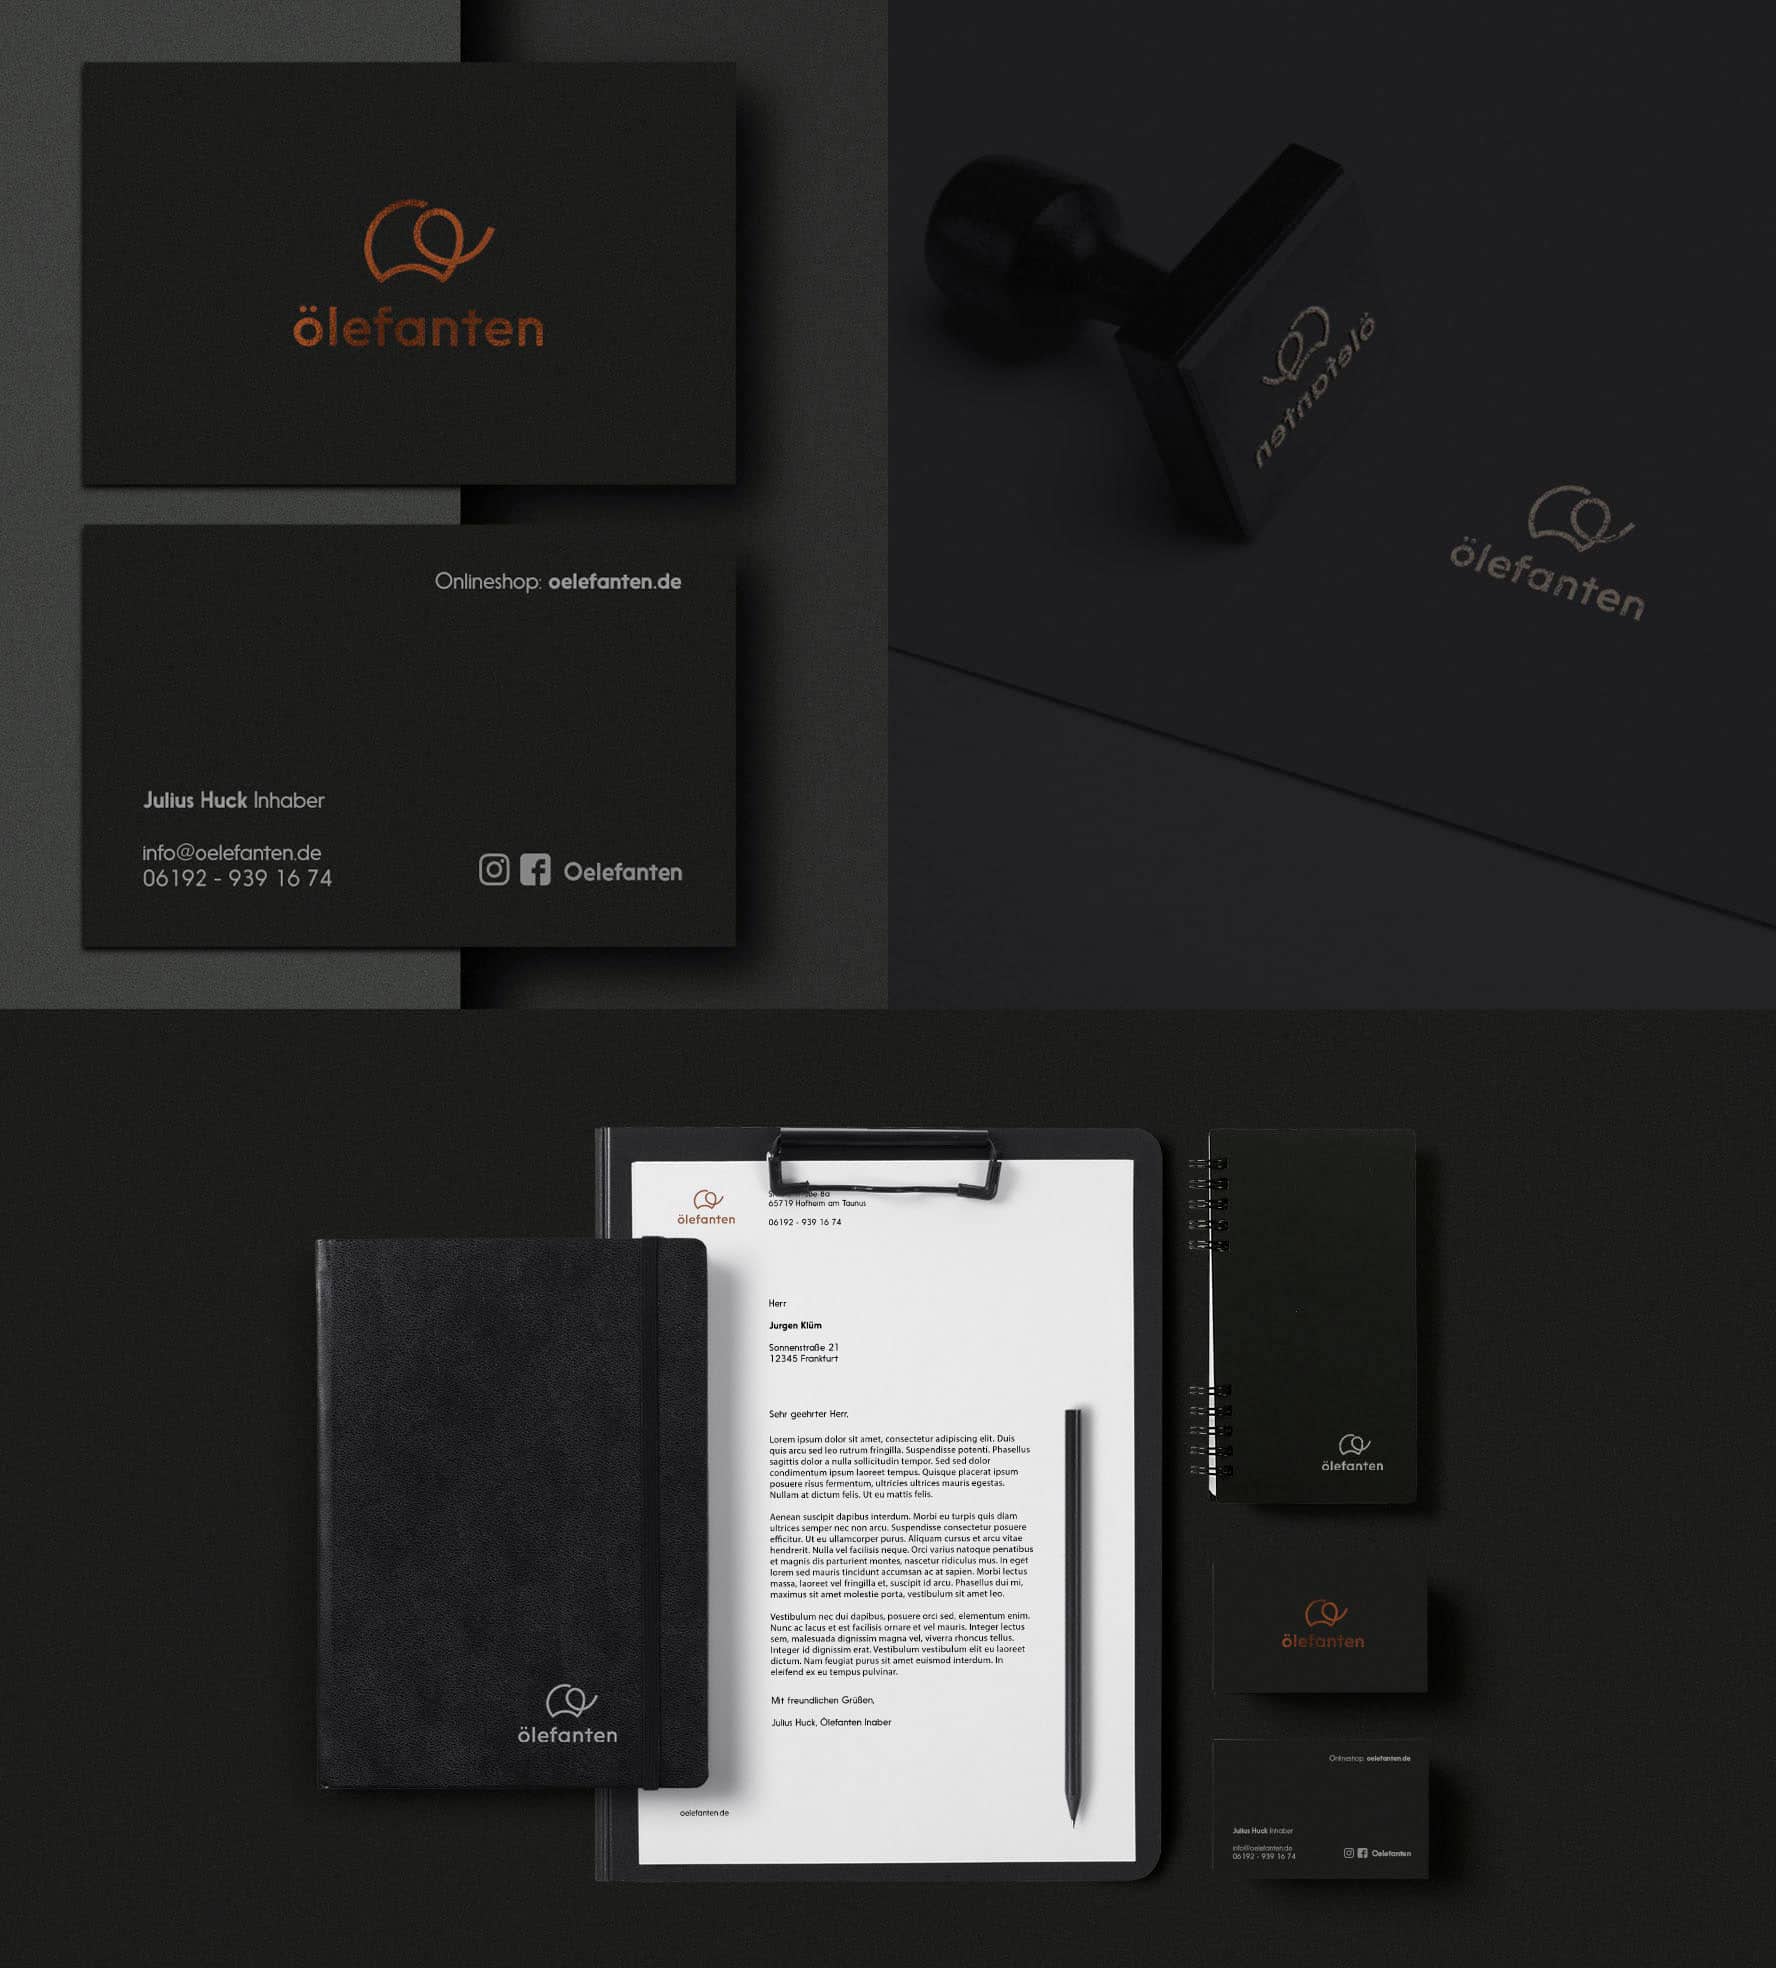 branding-rebranding-redesign-porjektowanie-opakowan-lodz-studio-graficzne-logo-packaging-design-identyfikacja-wizualna